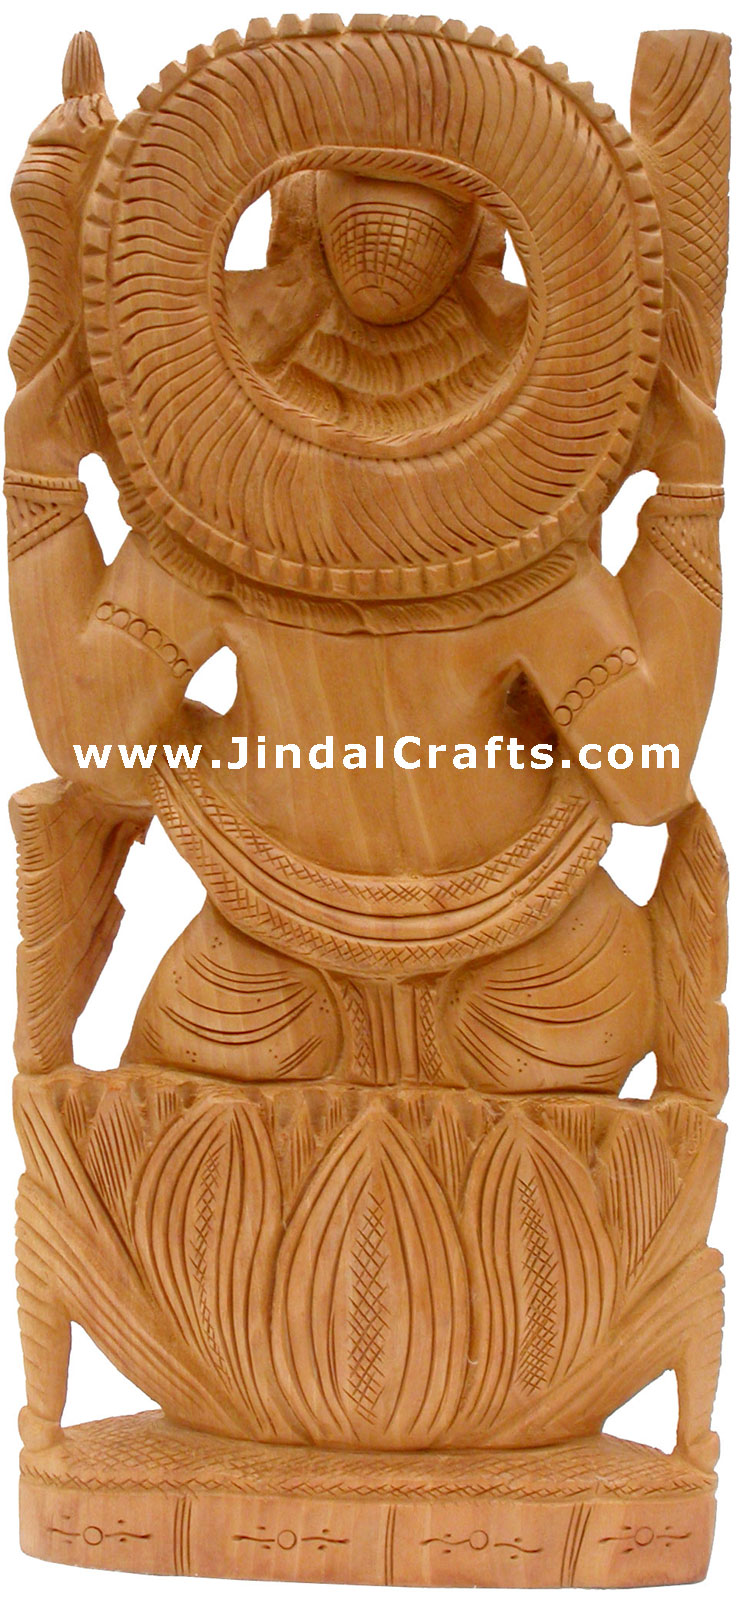 Handcrafted Wooden Ganesha Hindu Sculptures Art